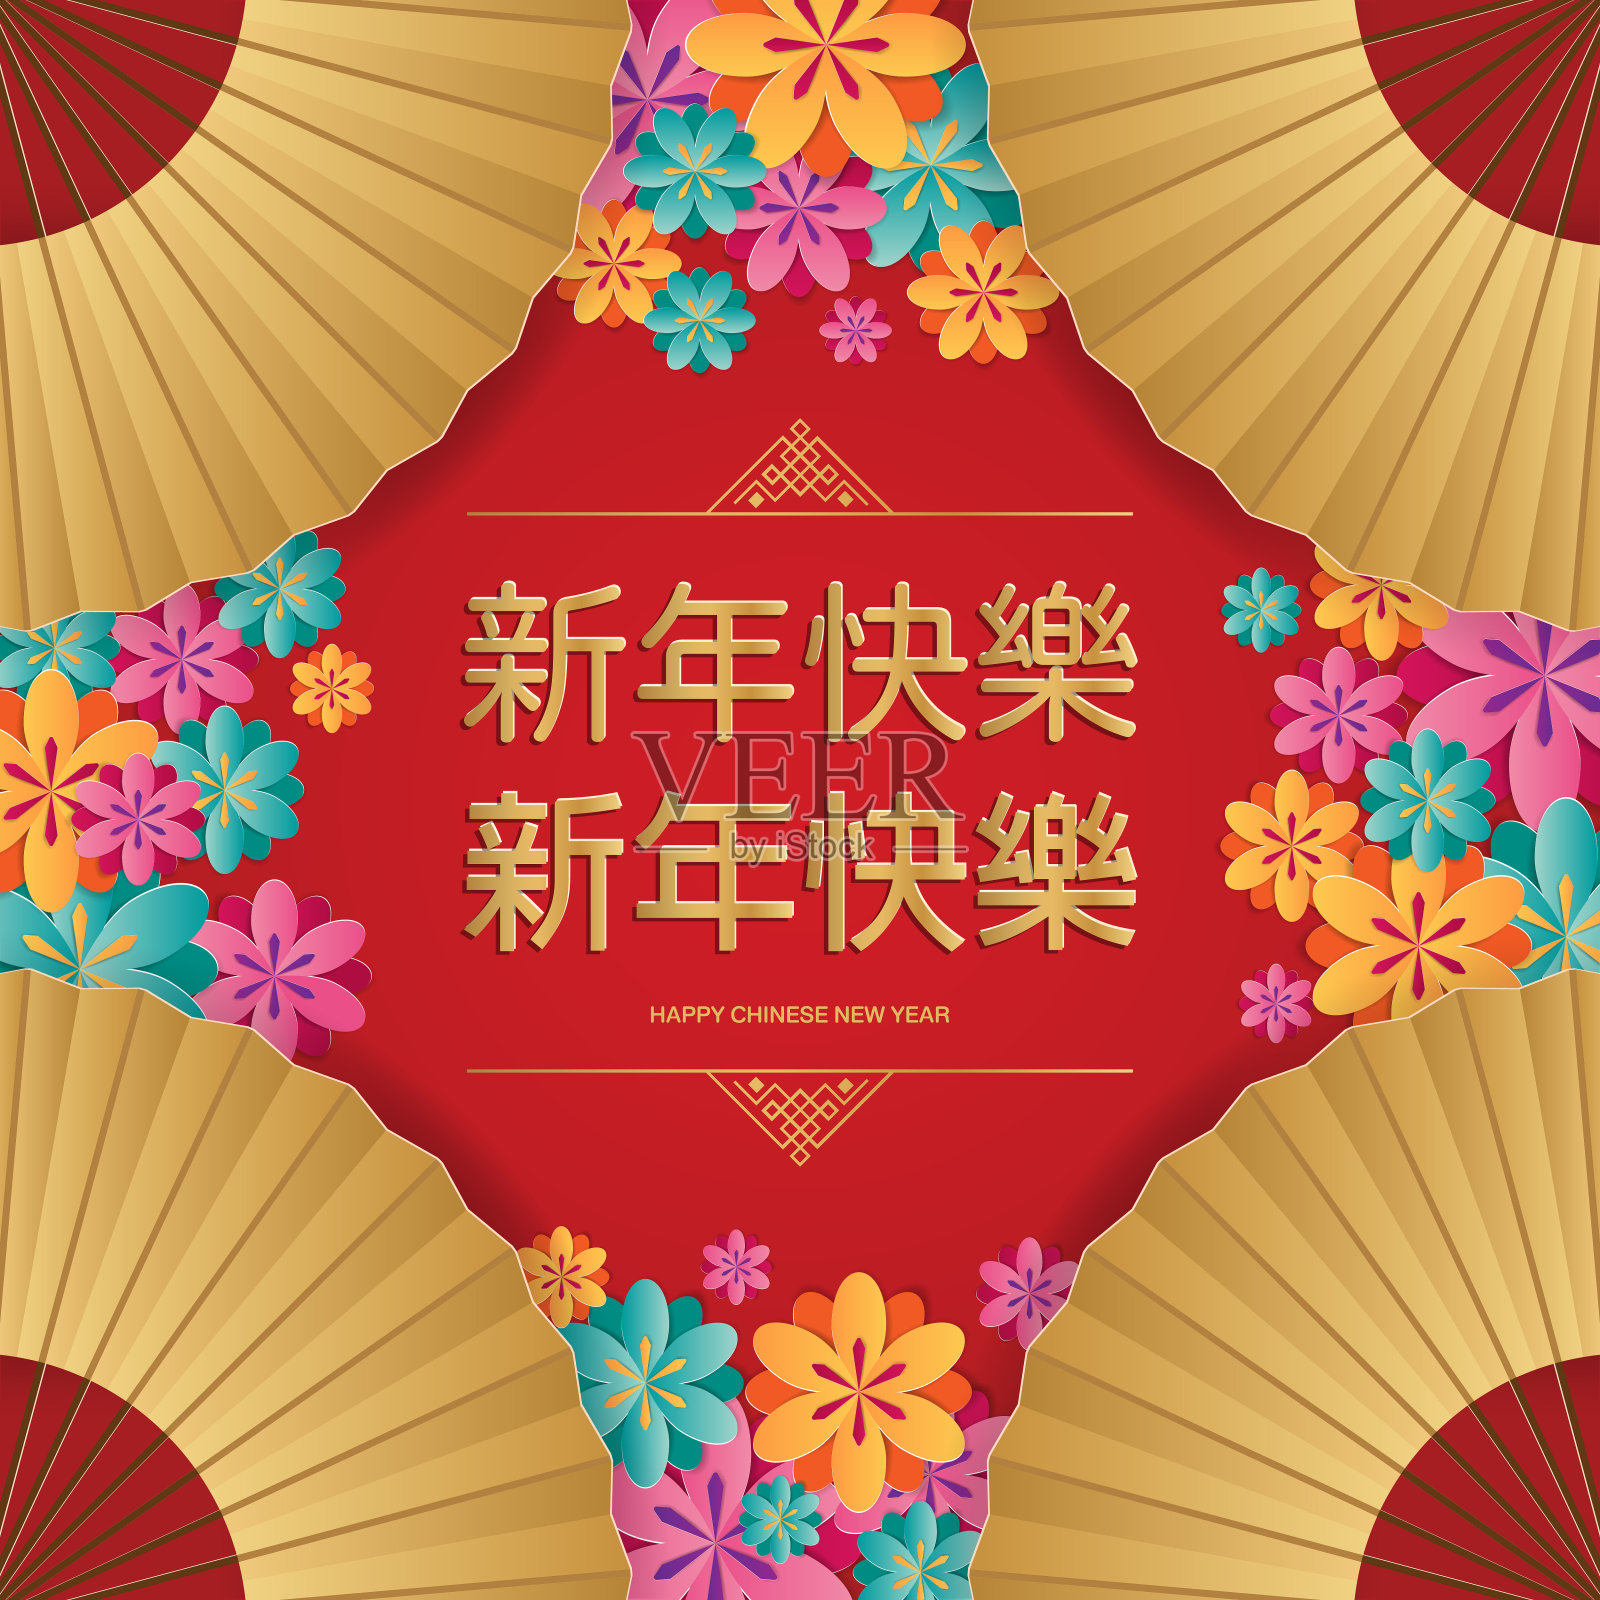 中国新年背景与中国扇子，樱花，和传统亚洲图案。设计模板素材